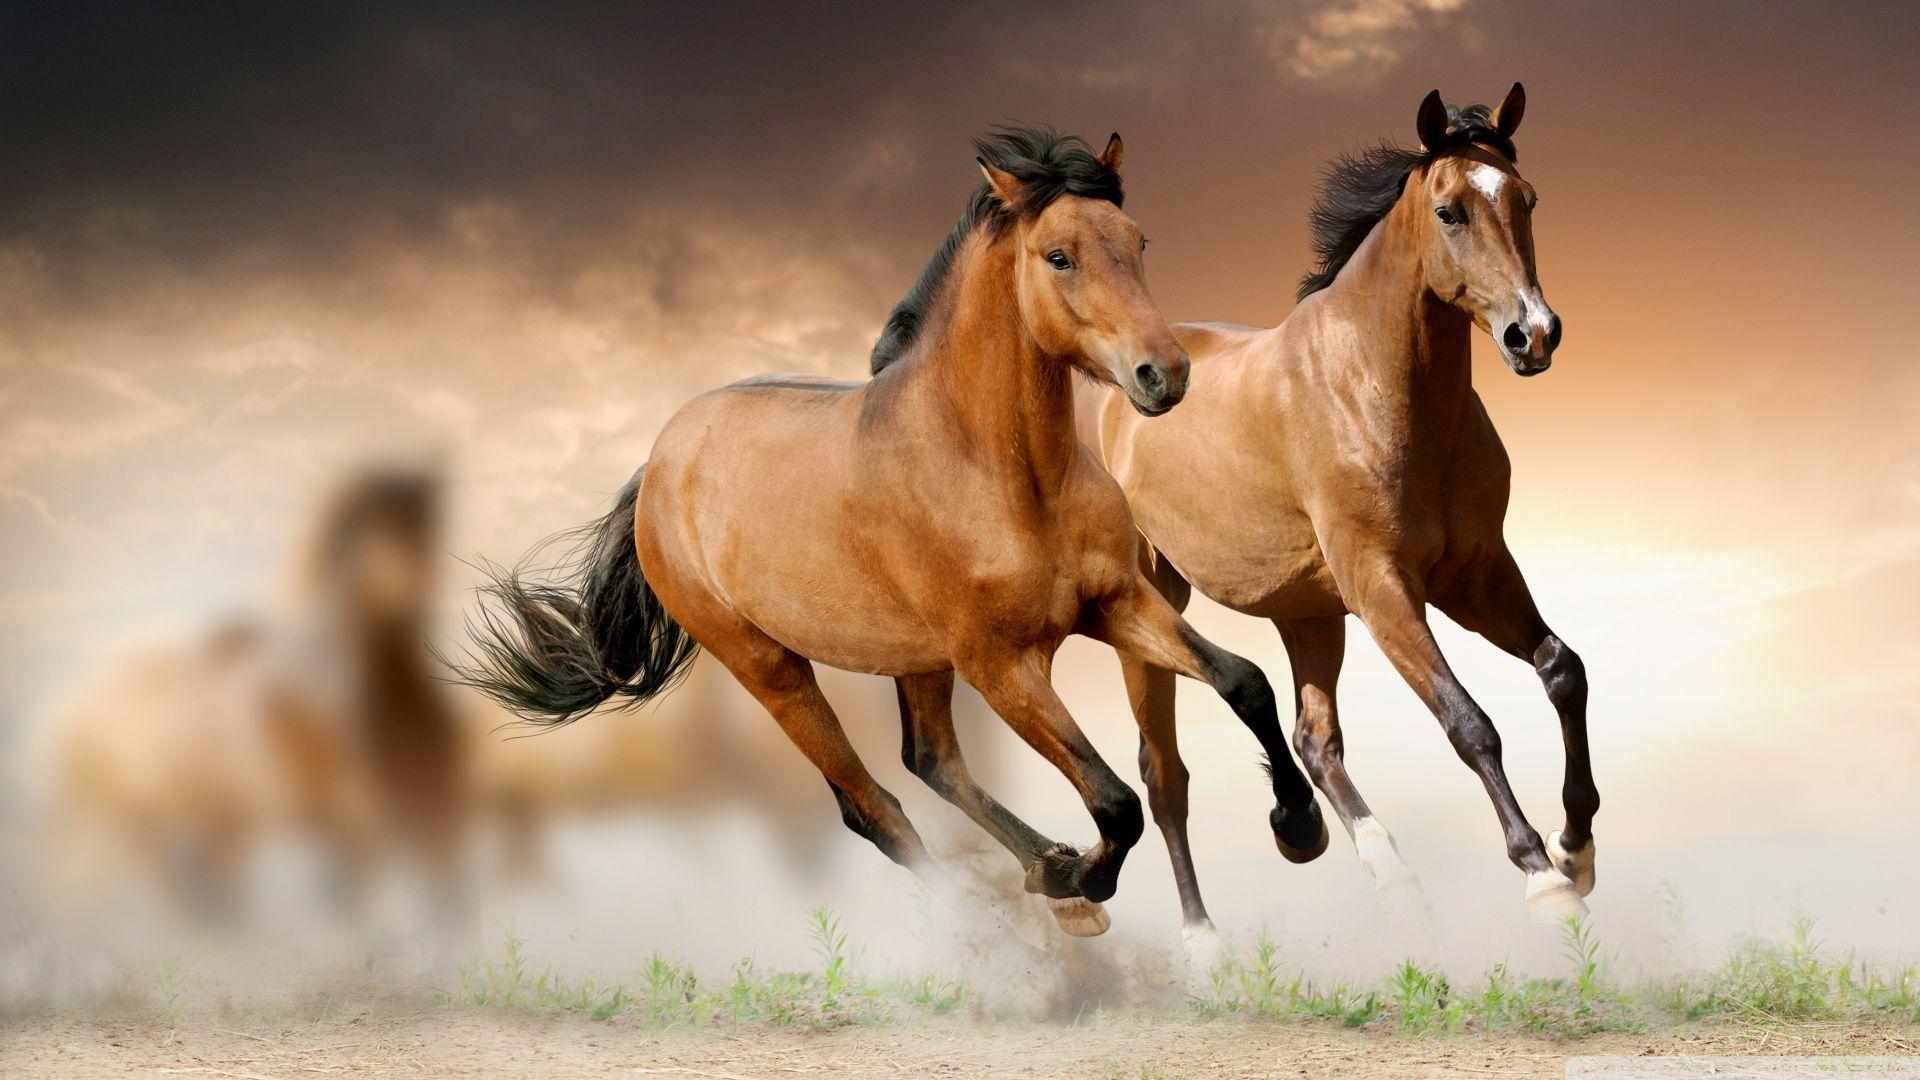 Two Horse Running Wallpaper Widescreen Wallpaper. Wallpaper